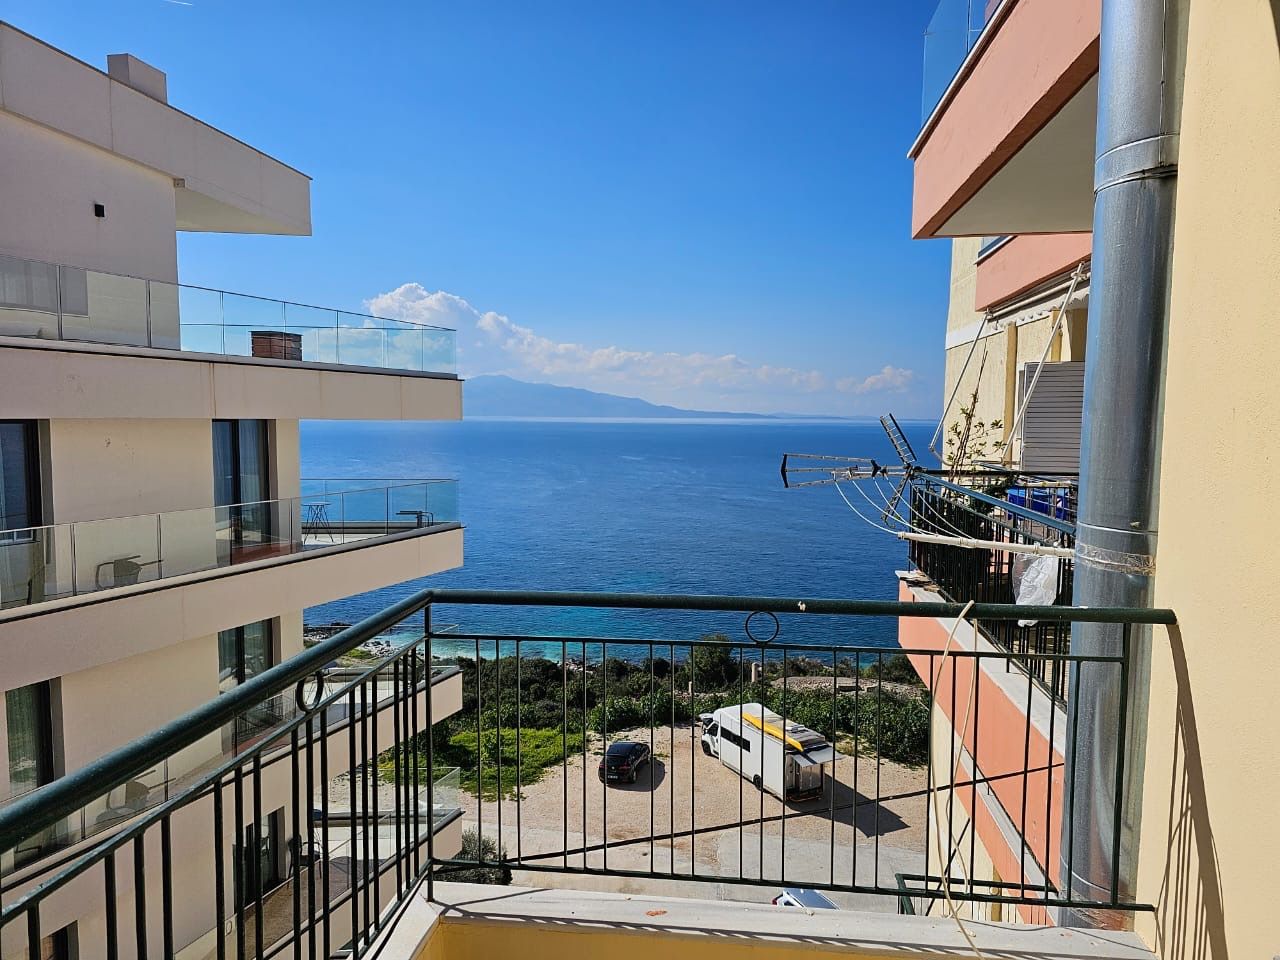  Albanien Immobilien in Saranda zu verkaufen, mit tollem Meerblick, in einer sehr guten Lage gelegen